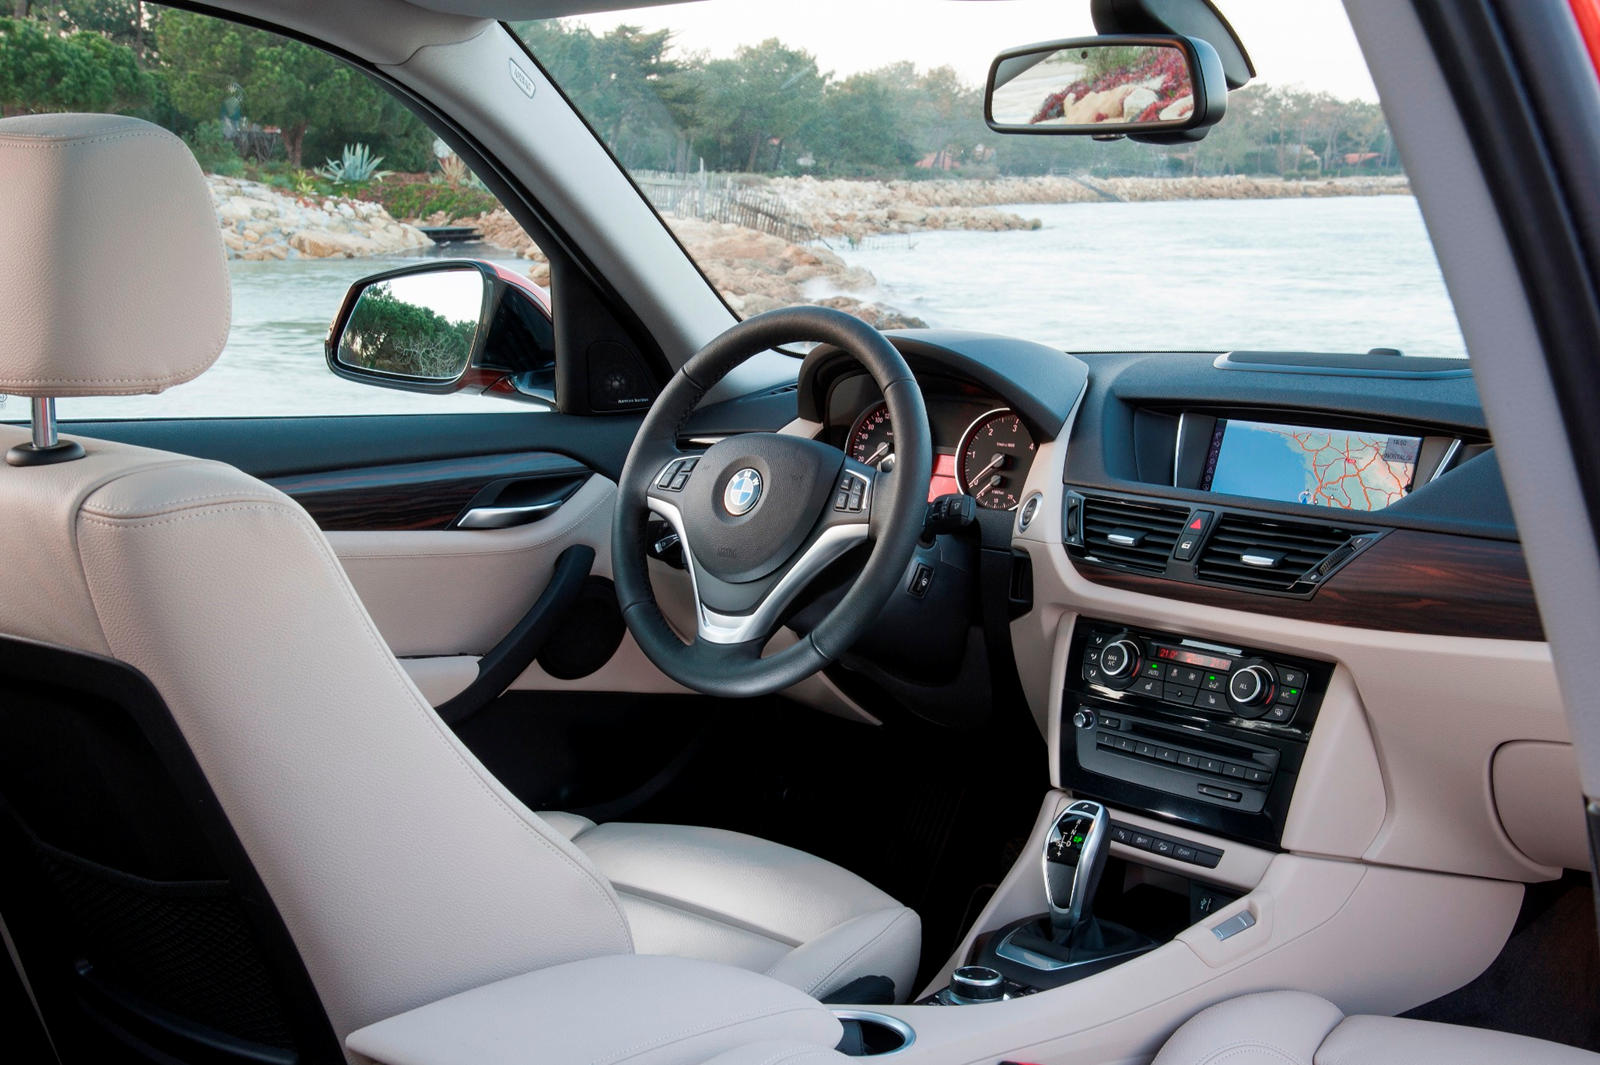 2014 BMW X1 Interior Photos | CarBuzz